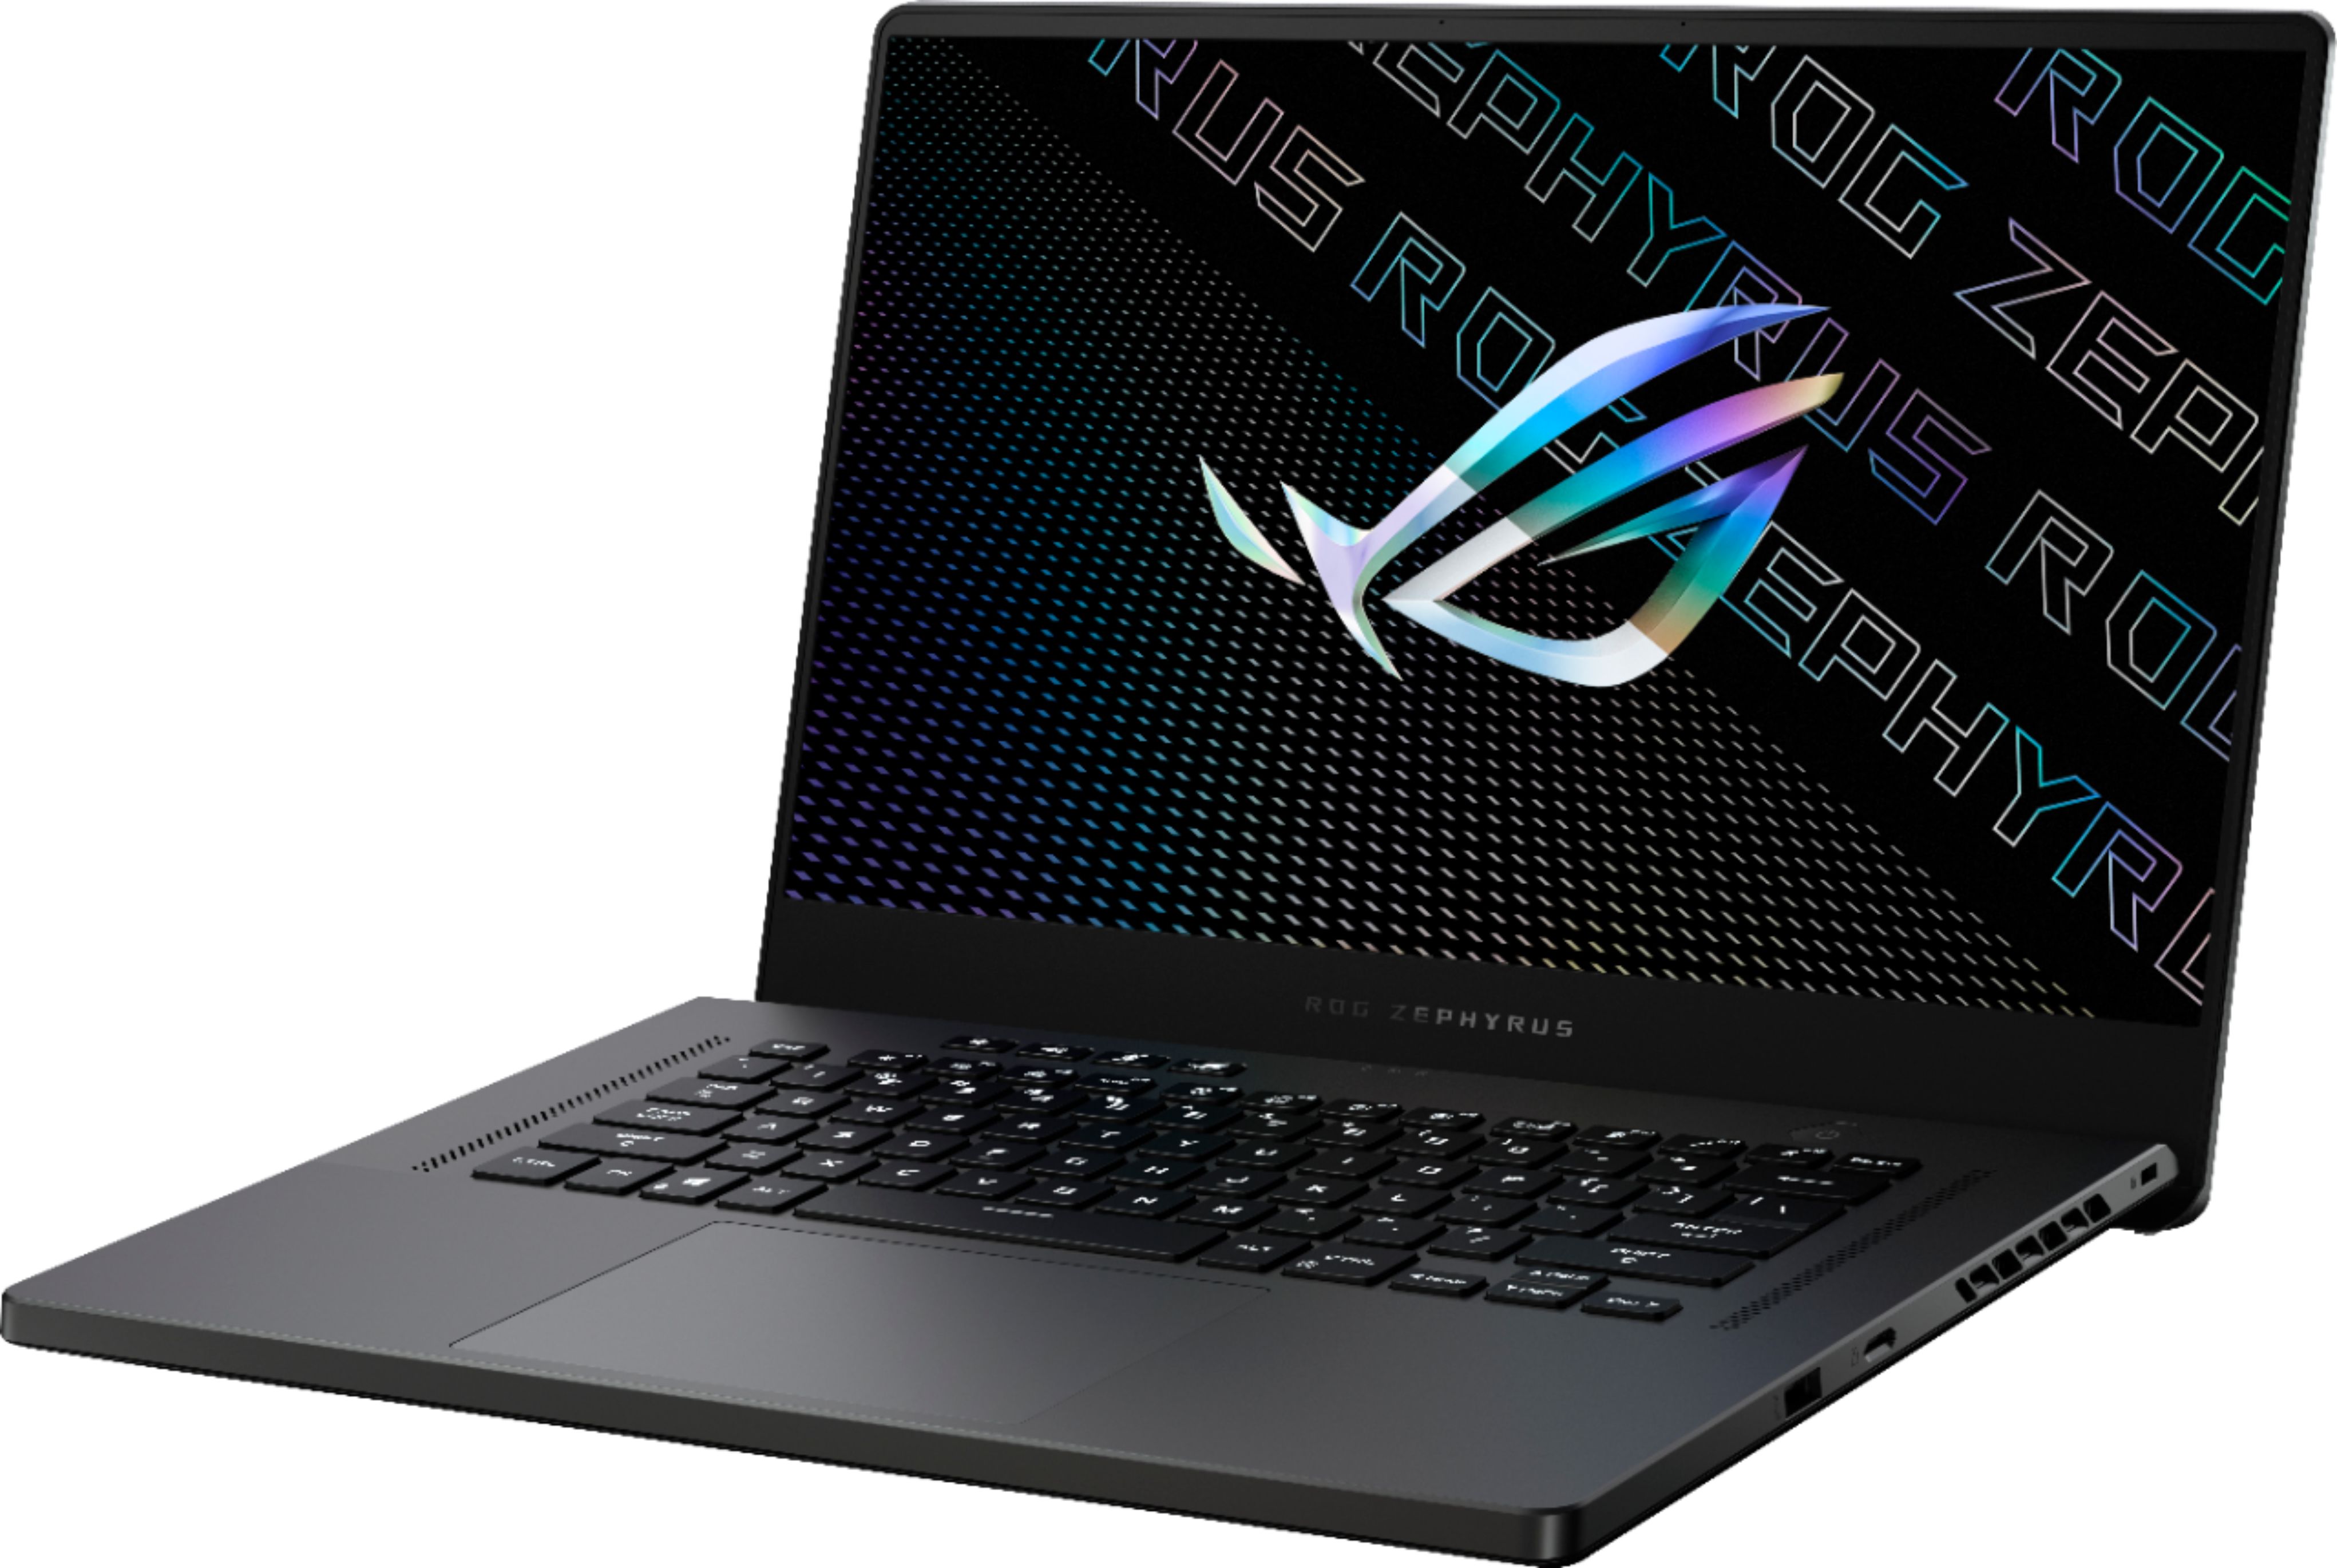 ASUS ROG Zephyrus 3070 15.6" Gaming Laptop 1749.99 @ best buy